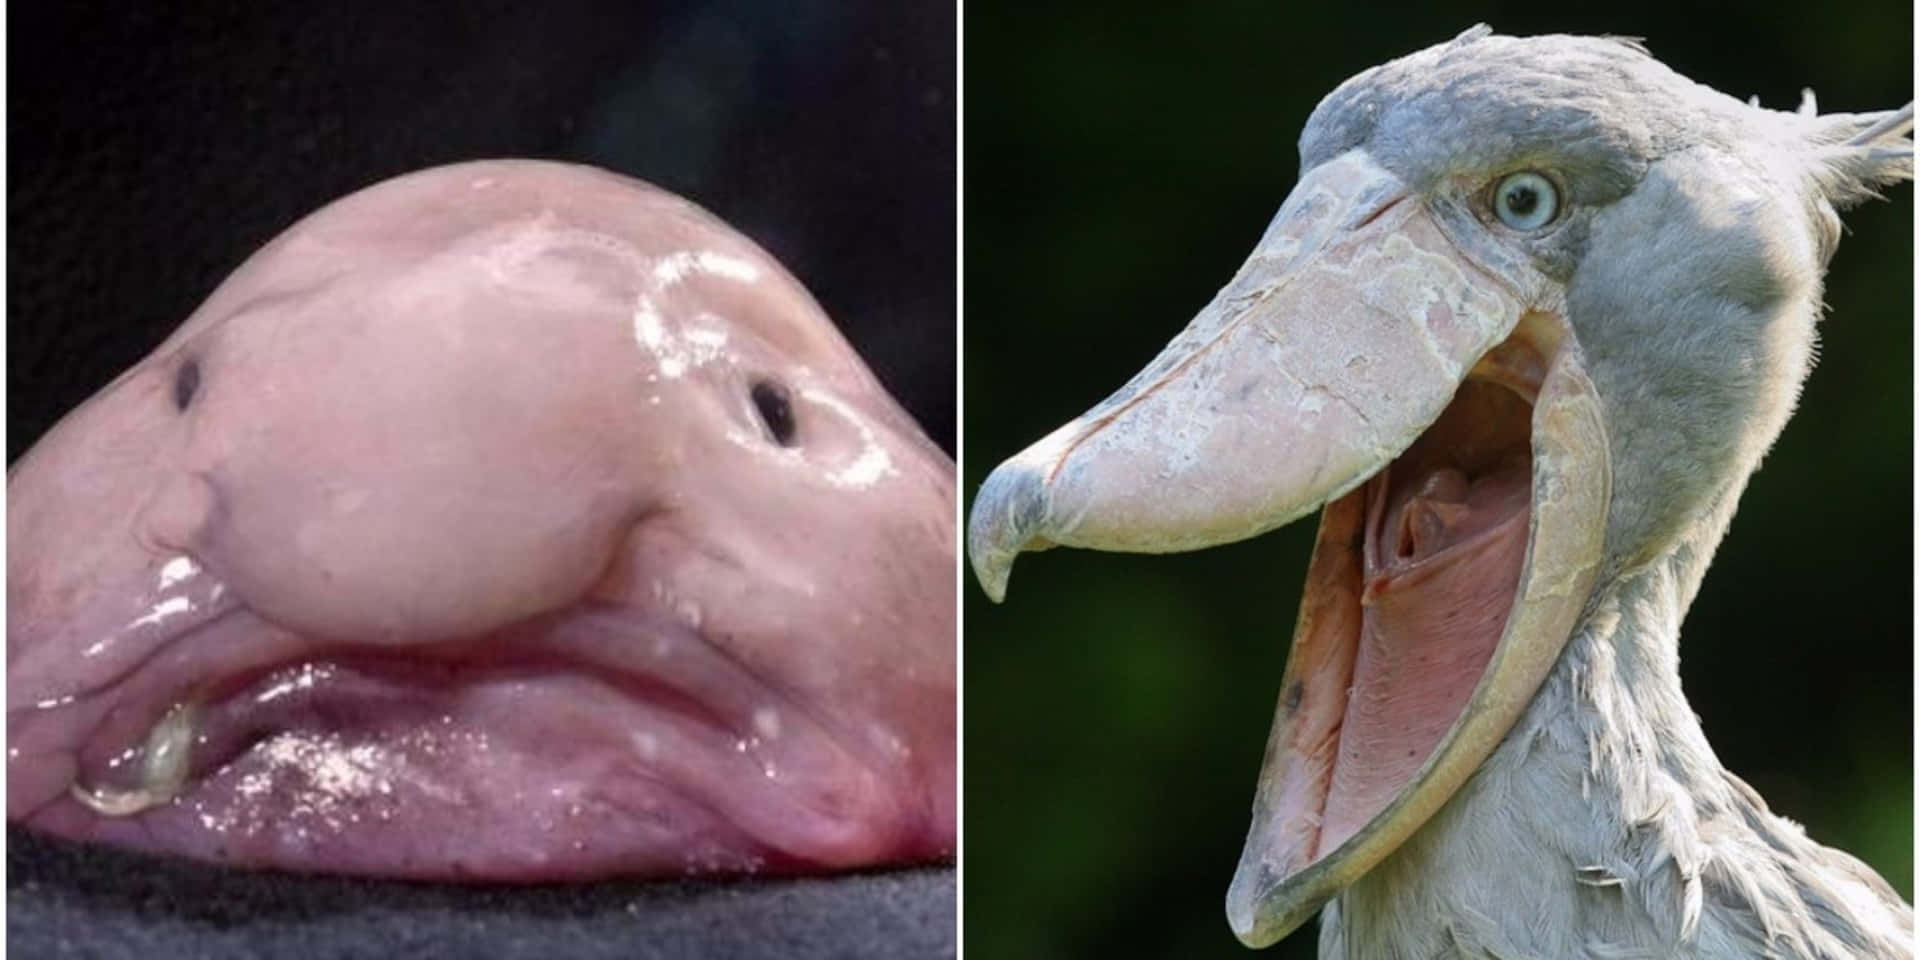 En stork med en stor mund og en stork med en stor mund